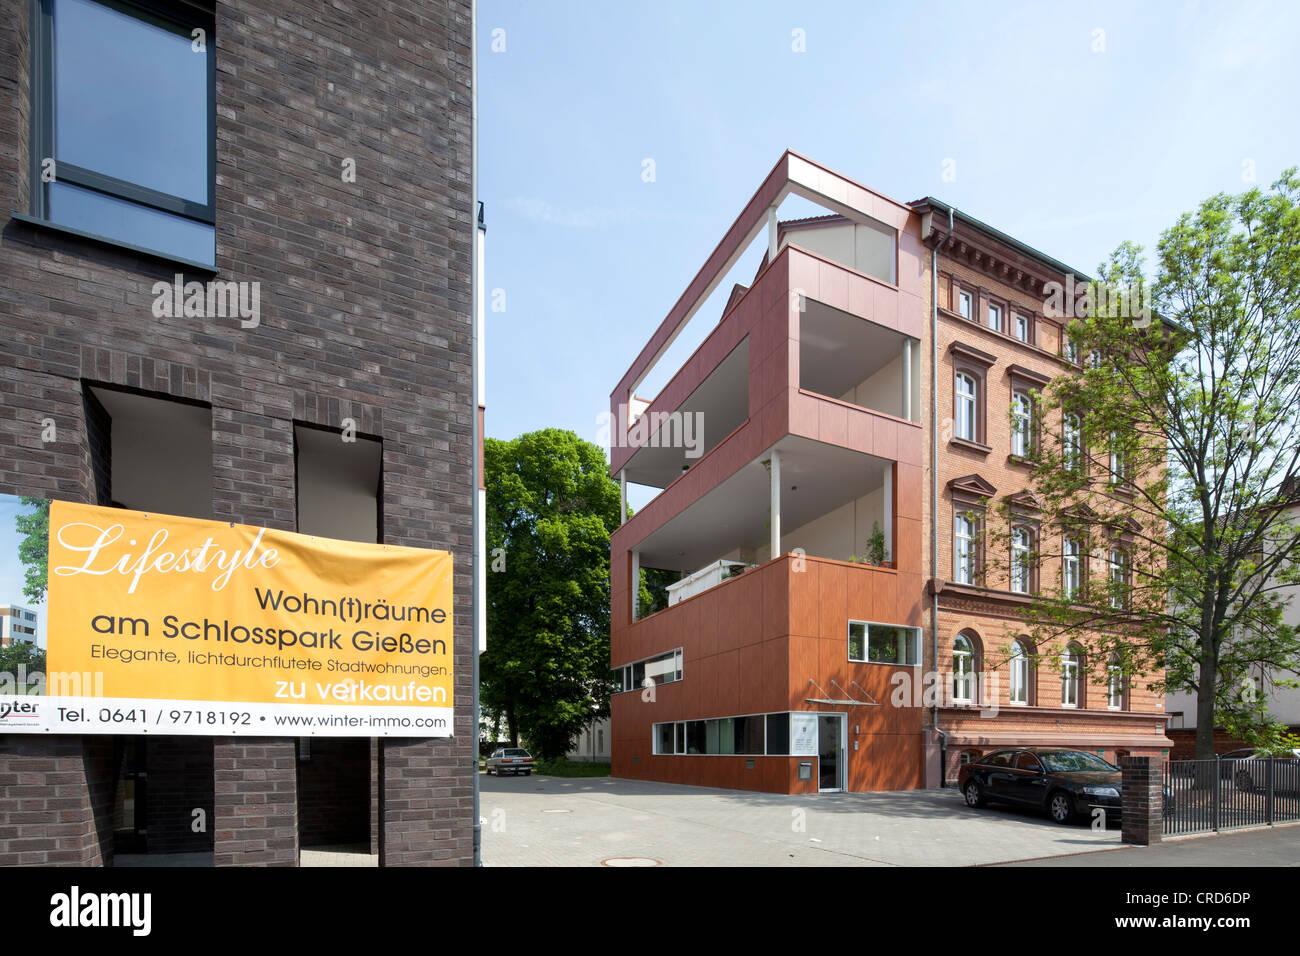 Edificio residencial, edificio de oficinas, arquitectura contemporánea, Giessen, Hesse, Alemania, Europa, PublicGround Foto de stock